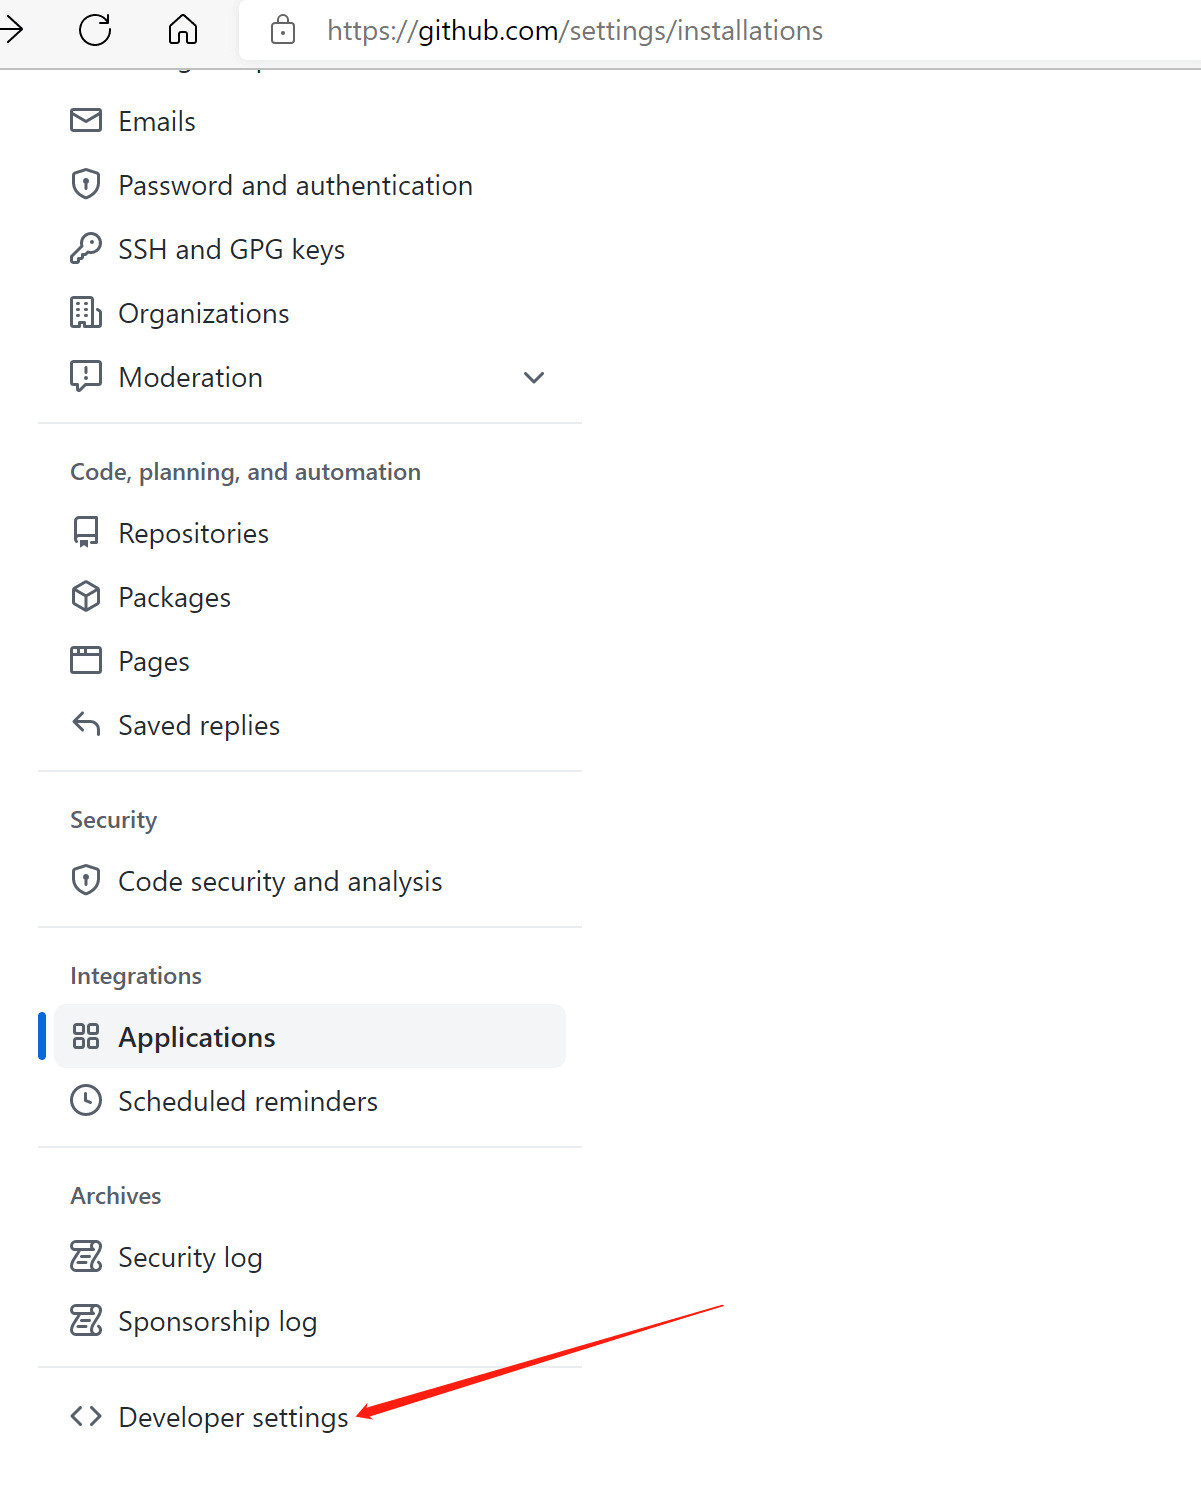 点击Developer settings